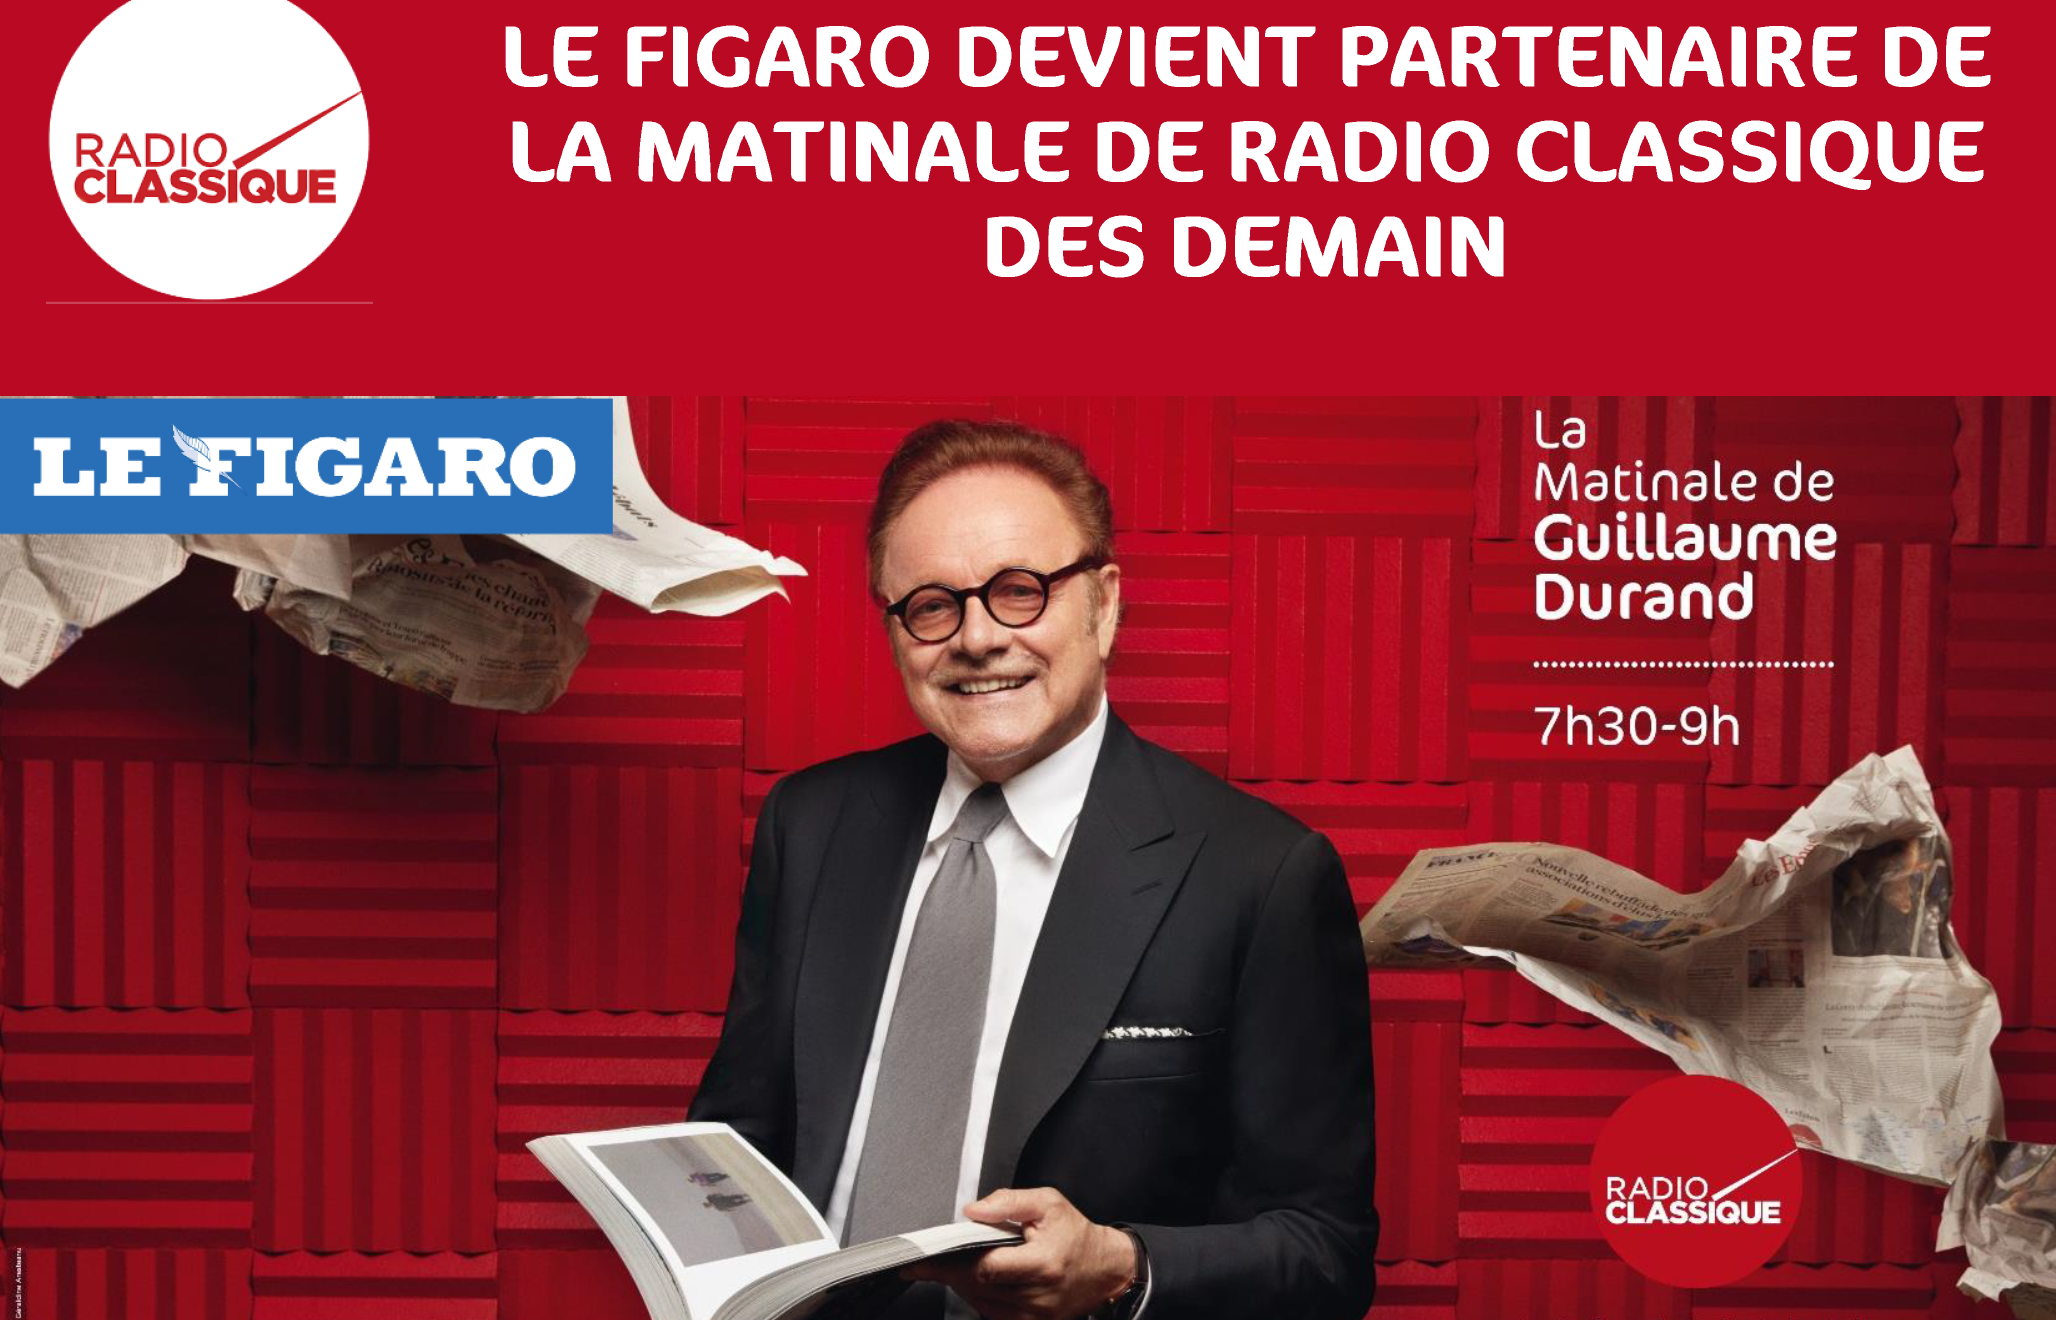 Radio Classique : reprise de la matinale par Le Figaro